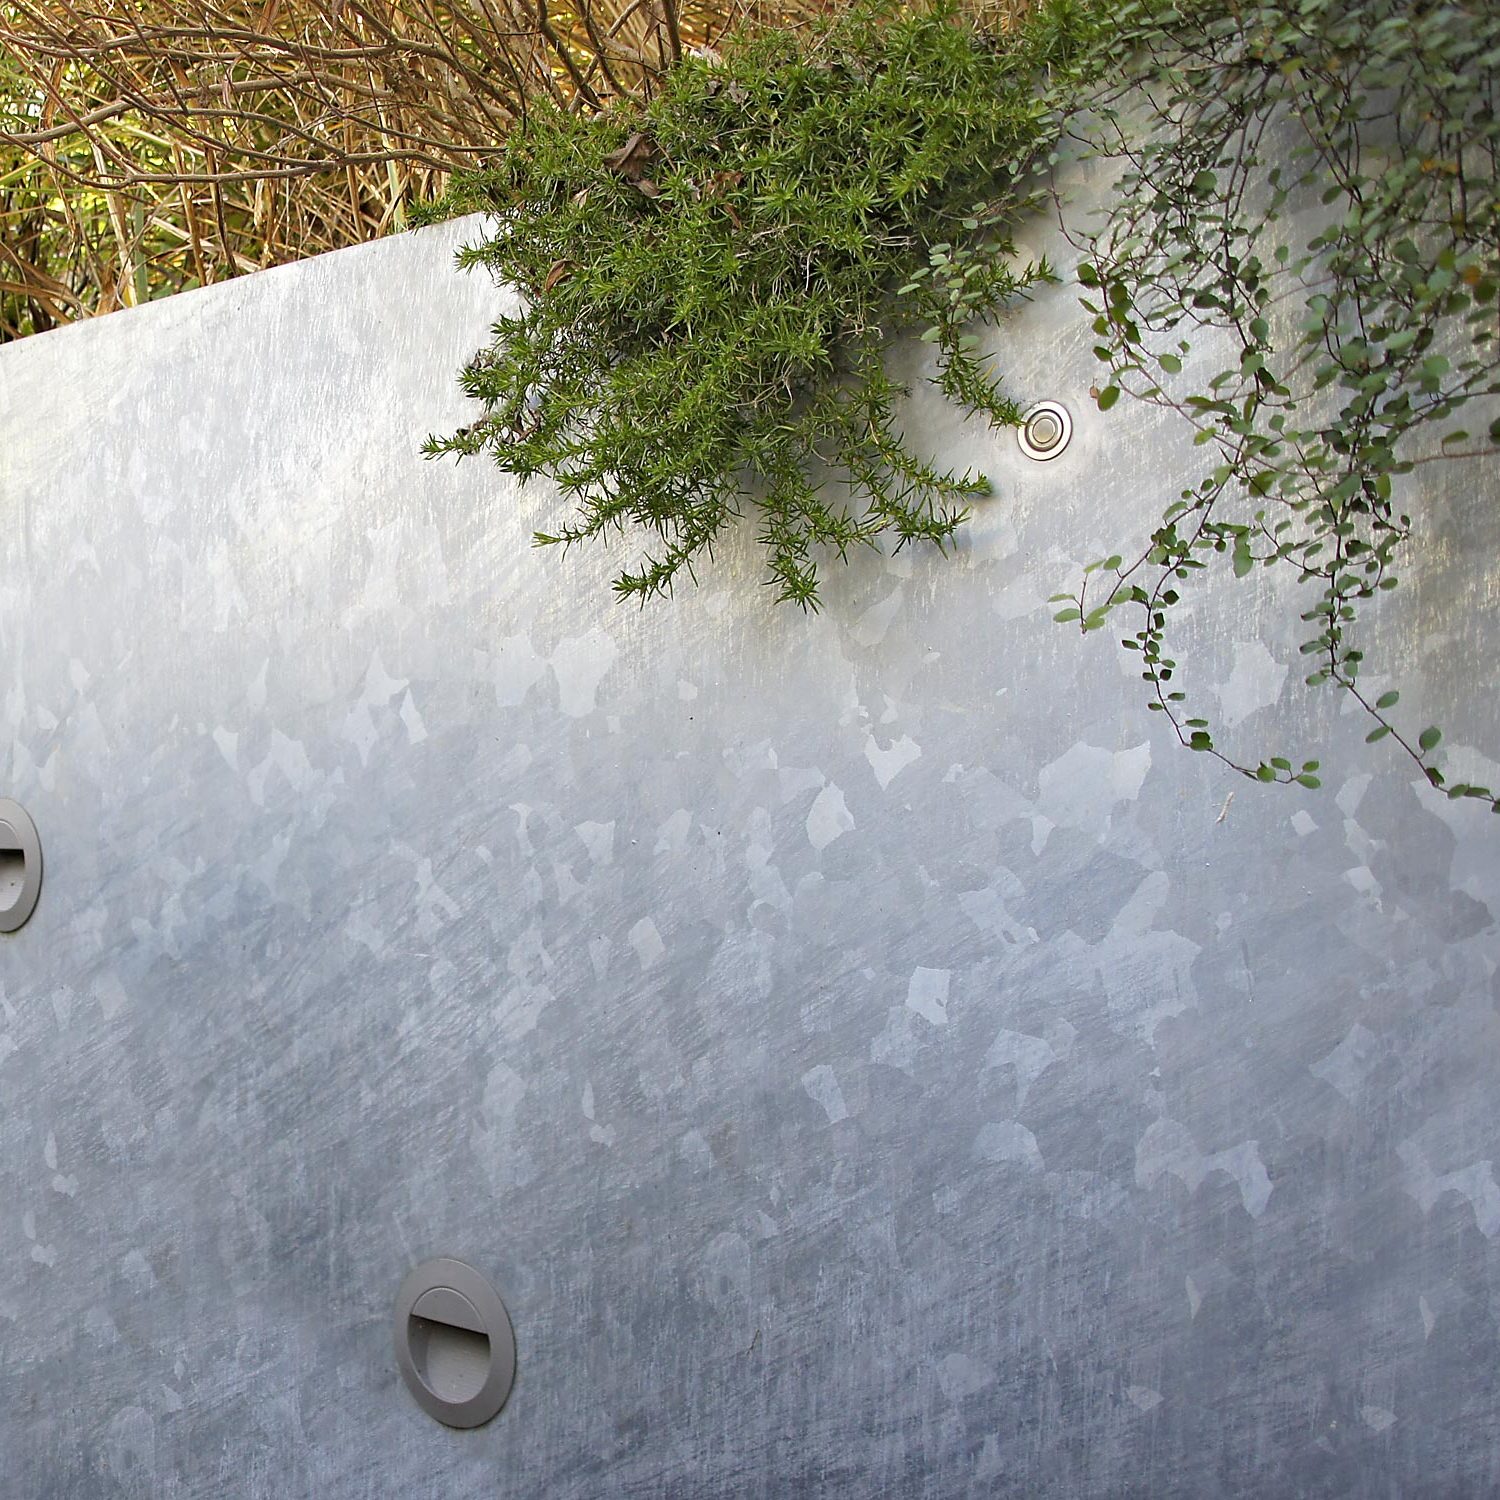 Stahlwand mit eingebauten Leuchten in eienm Reihenhaus-Garten